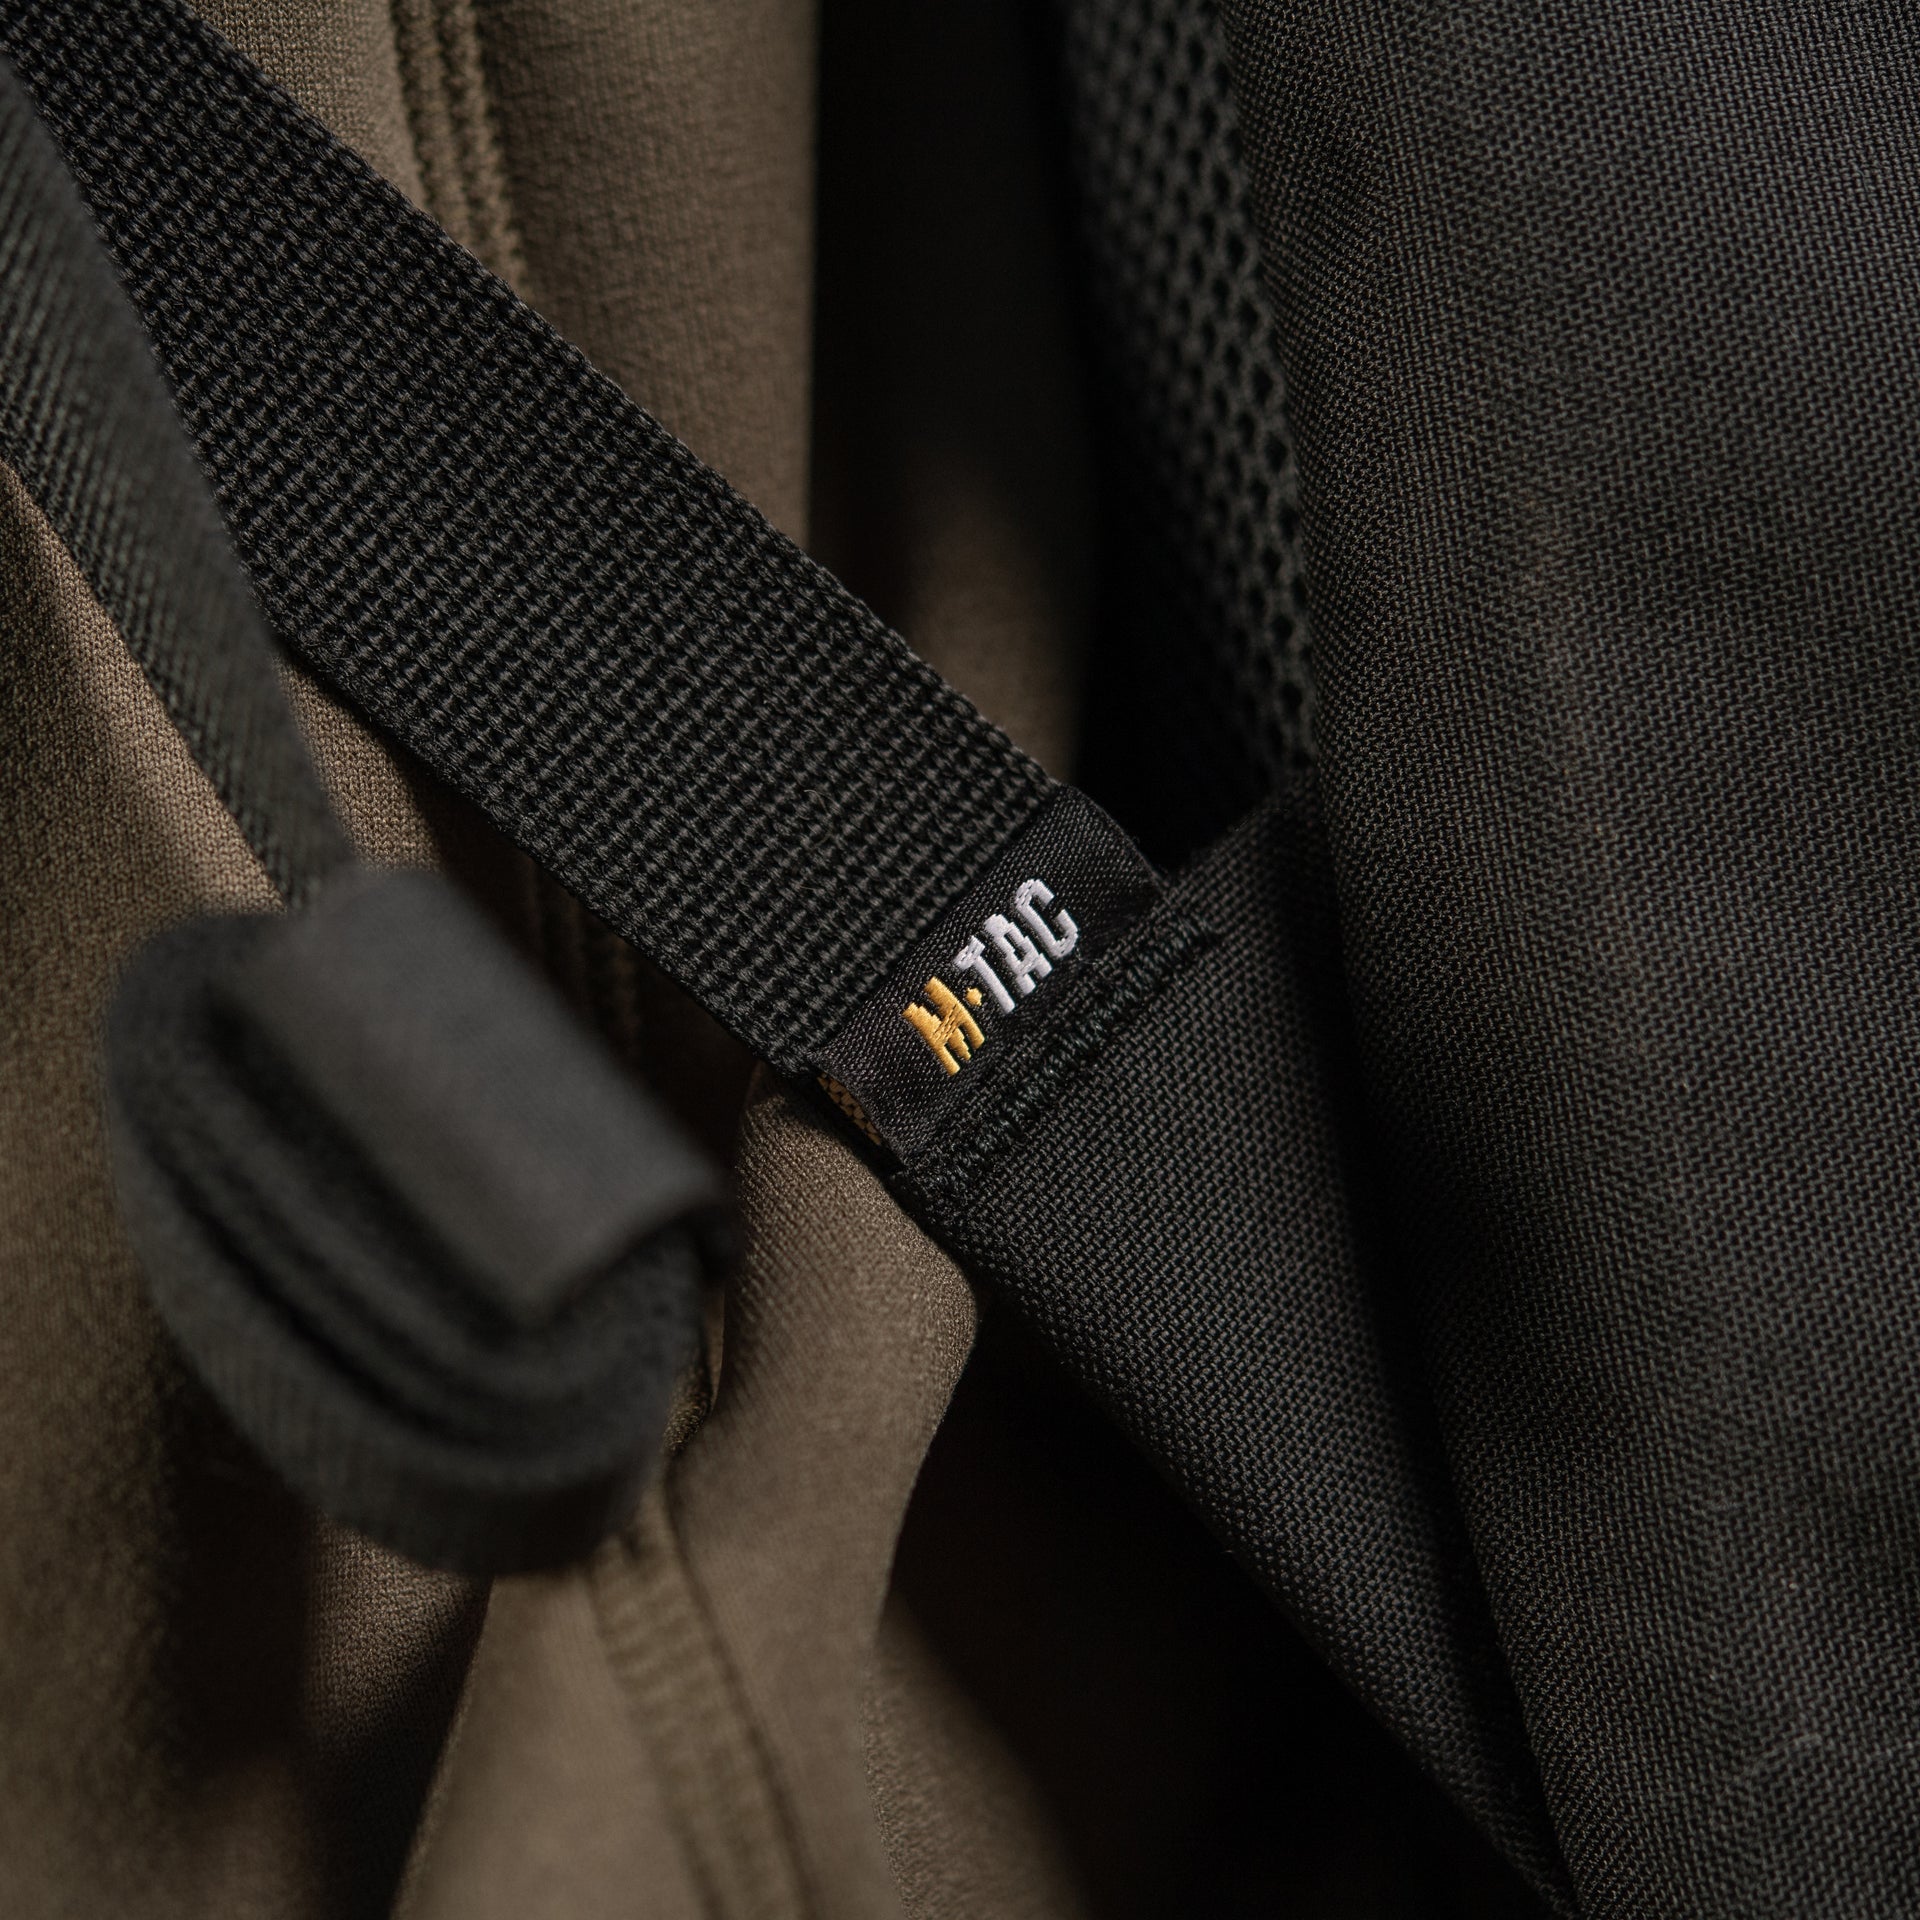 M-Tac Gun Backpack Case 41" Elite Hex Black